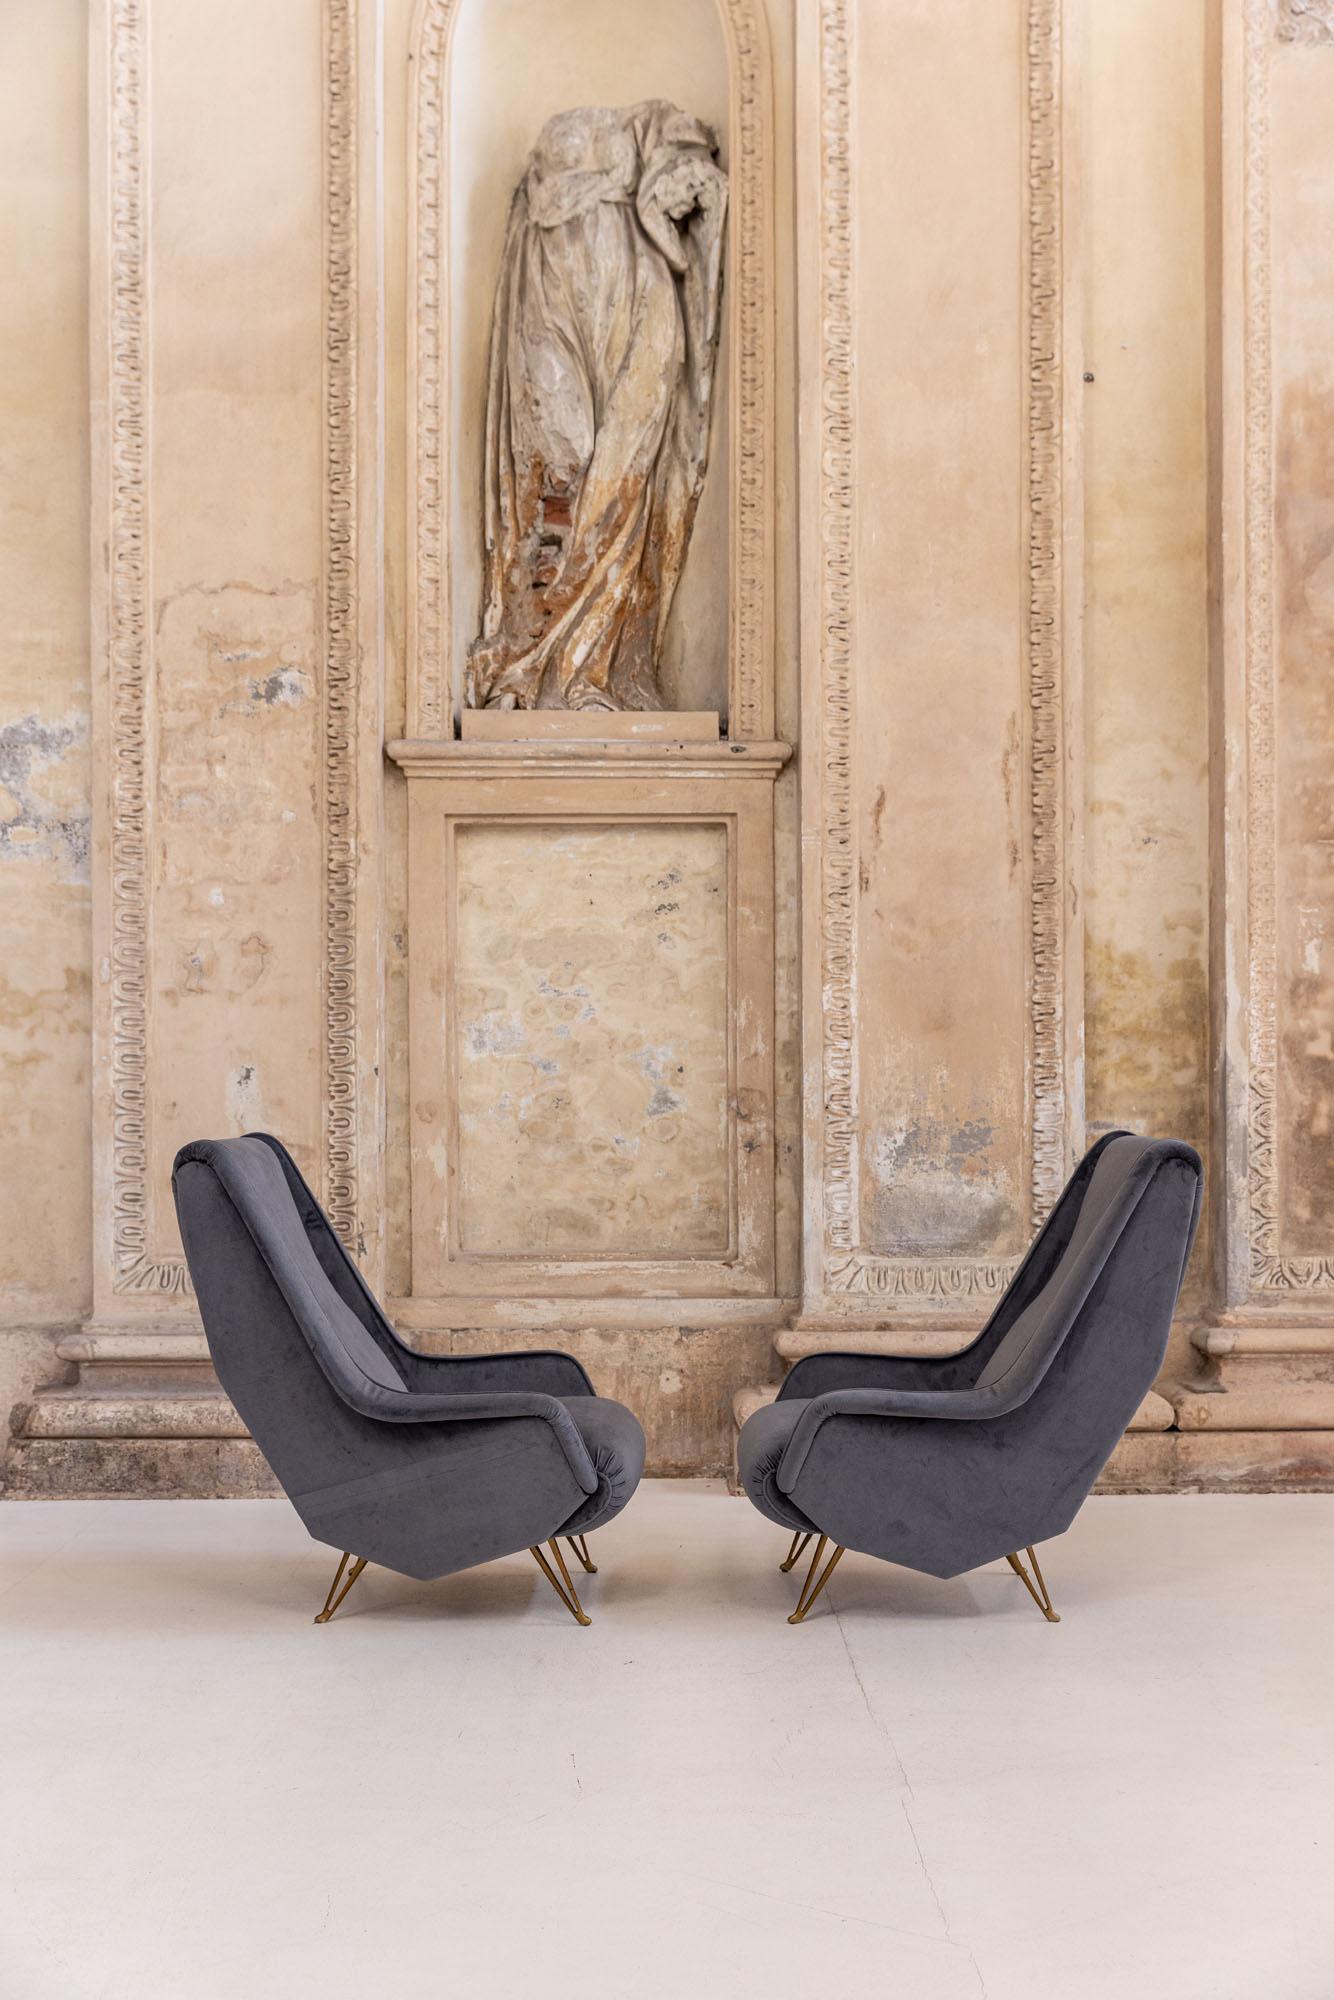 Superbe paire de fauteuils ISA Bergamo, Italie, années 1950.
Pieds en forme d'origine attribués à Gio Ponti.
Le modèle est particulièrement confortable grâce à son dossier haut et à son design. 
Nouvellement recouvert de velours bleu.